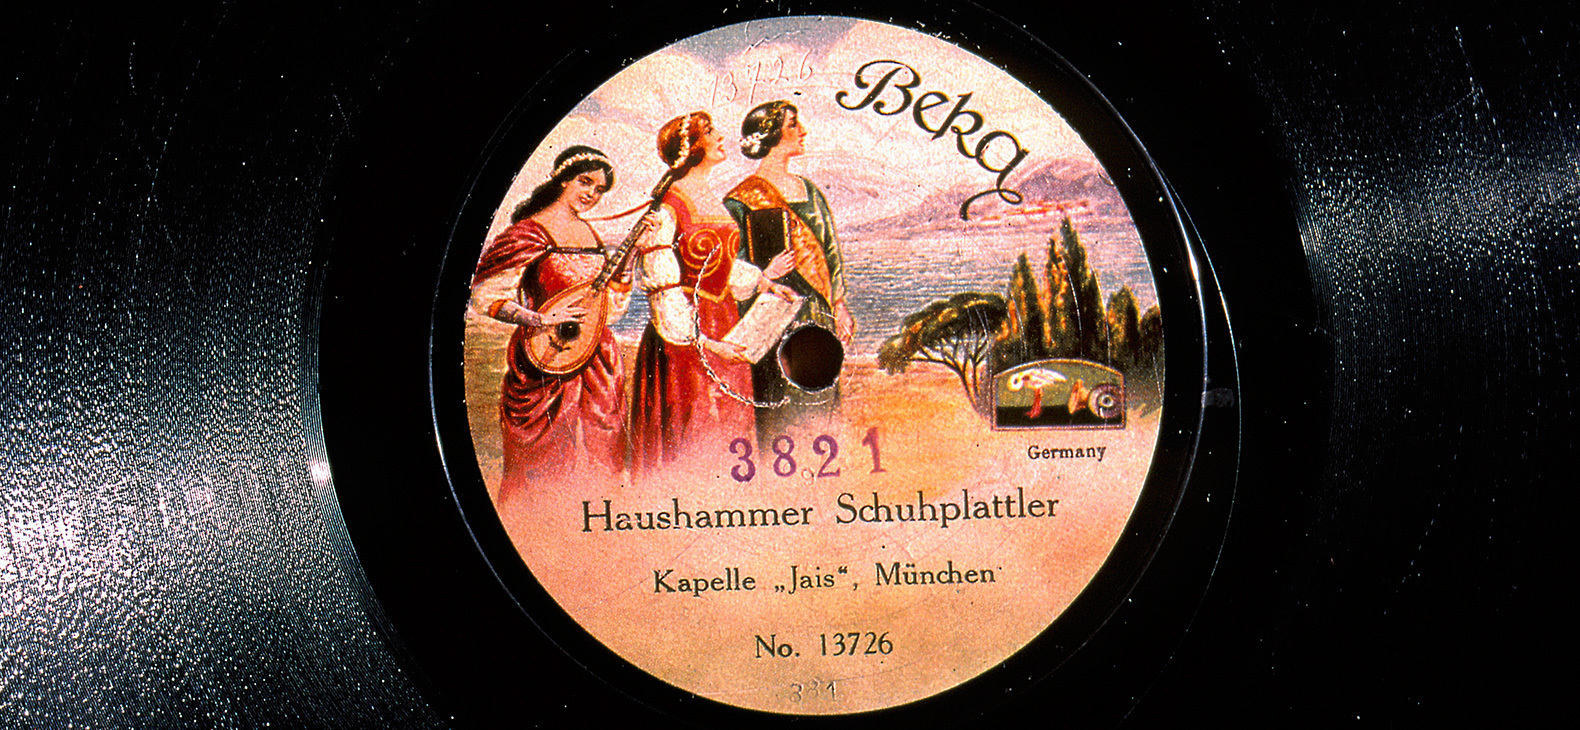 Eine Schallplatte: Auf dem Etikett ist ein Gemälde mit drei Frauen in Gewändern vor einer südeuropäischen Landschaft zu sehen und man kann "Haushammer Schuhplattler" und "Kapelle 'Jais'" sowie das Label "Beka" lesen.